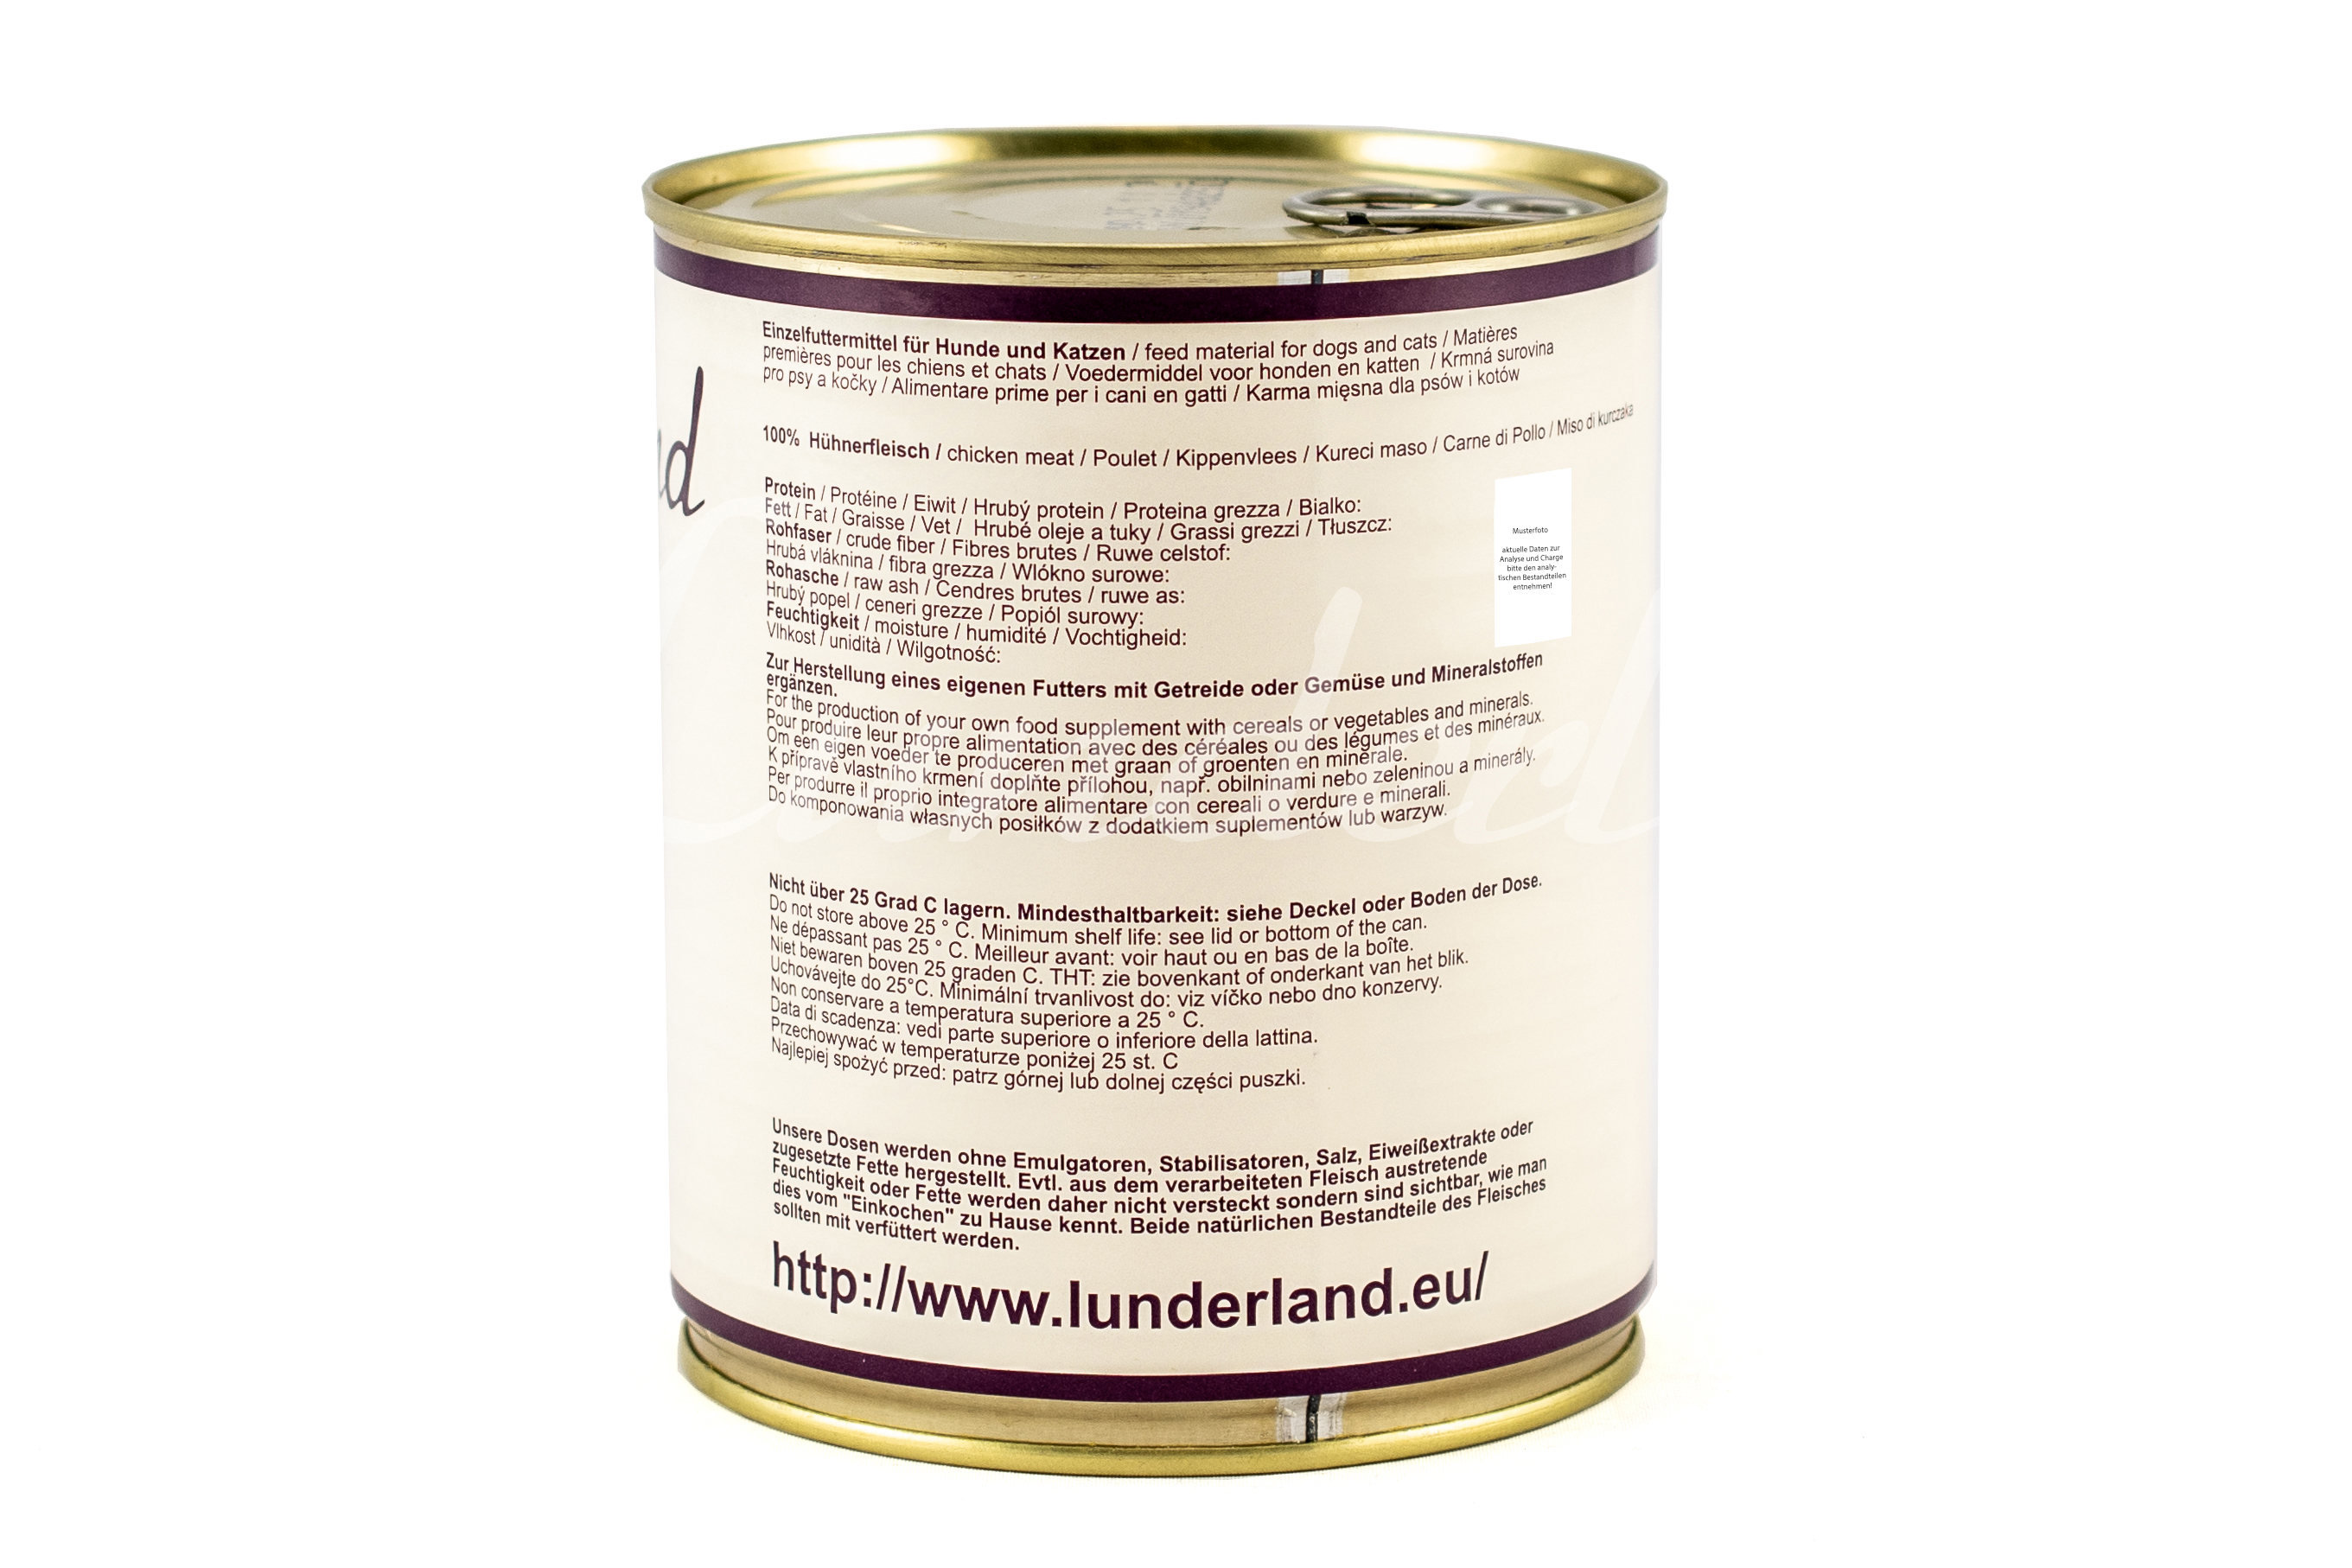 Lunderland-Dosenfleisch-Hühnerfleisch